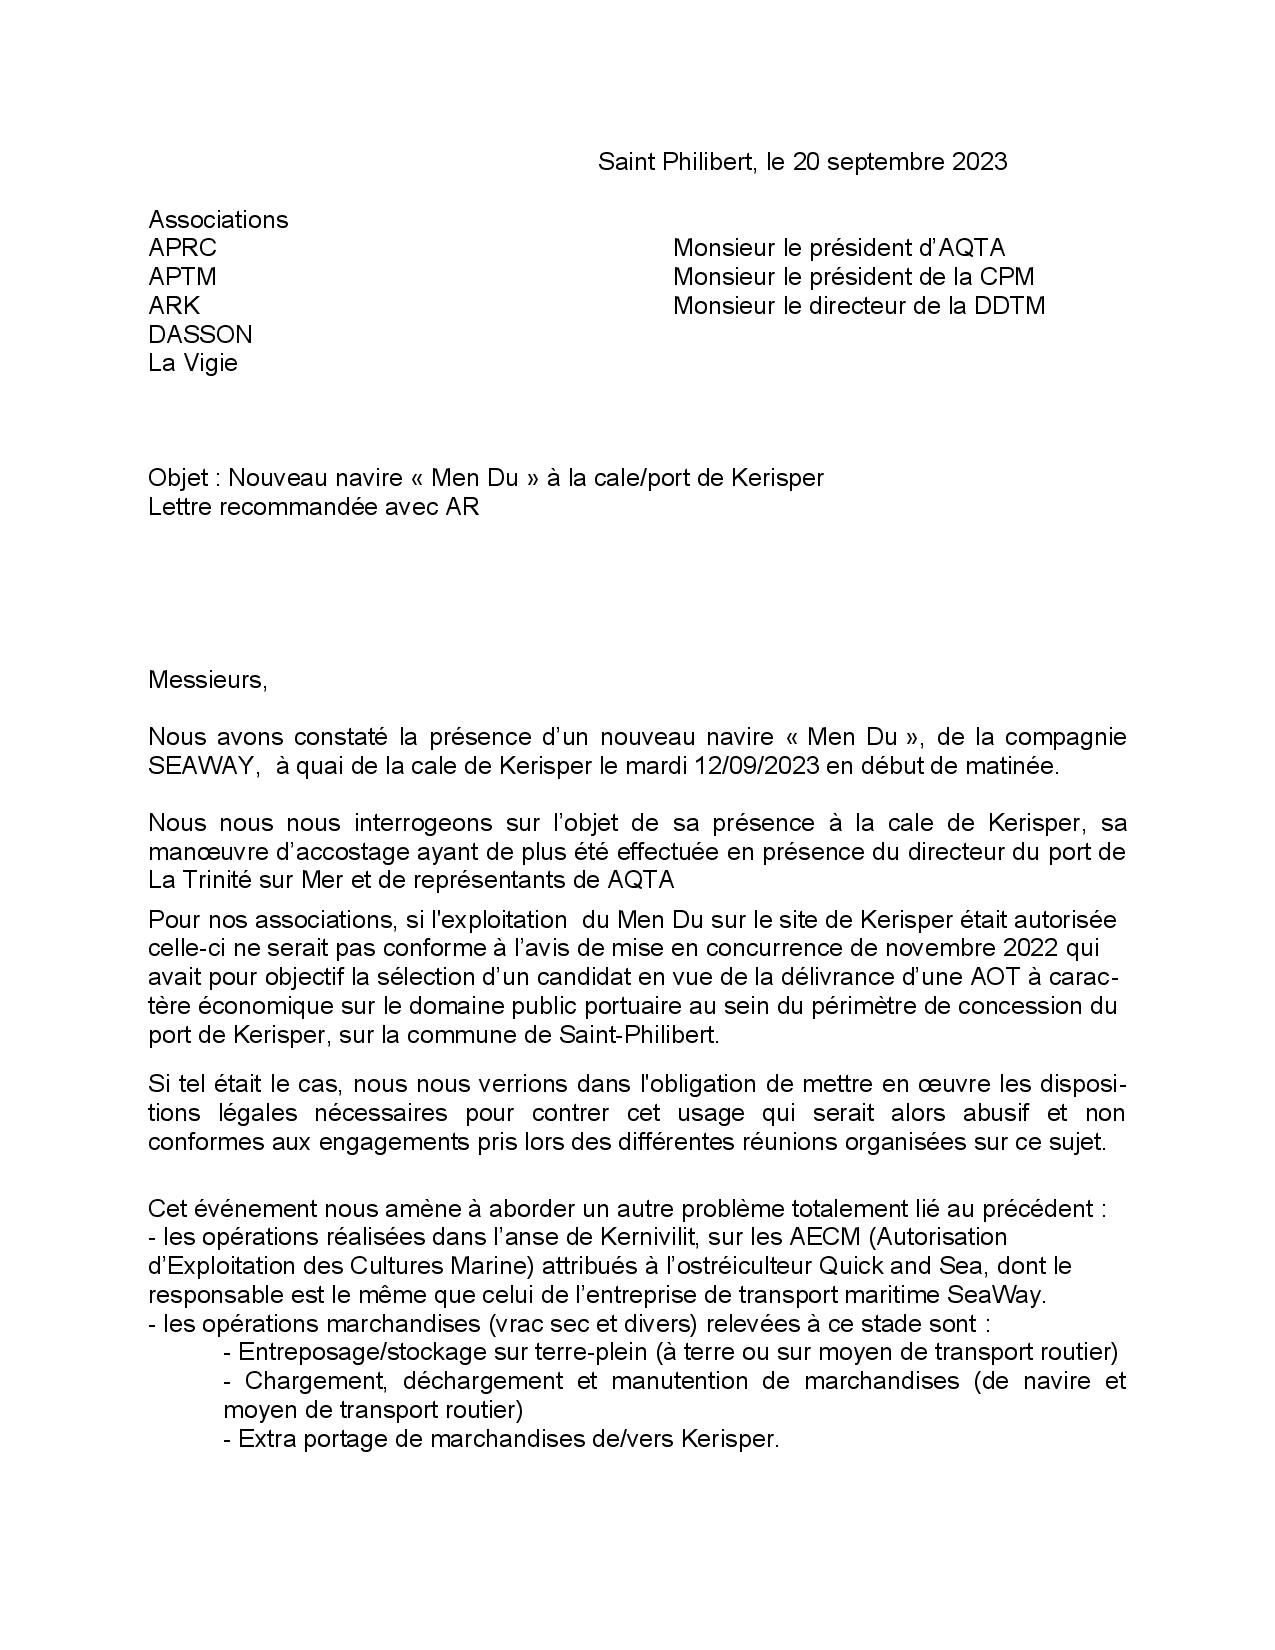 2023 09 20 lettre Assos APRC APTM ARK Dasson La Vigie à AQTA CPM DDTM-page-001.jpg